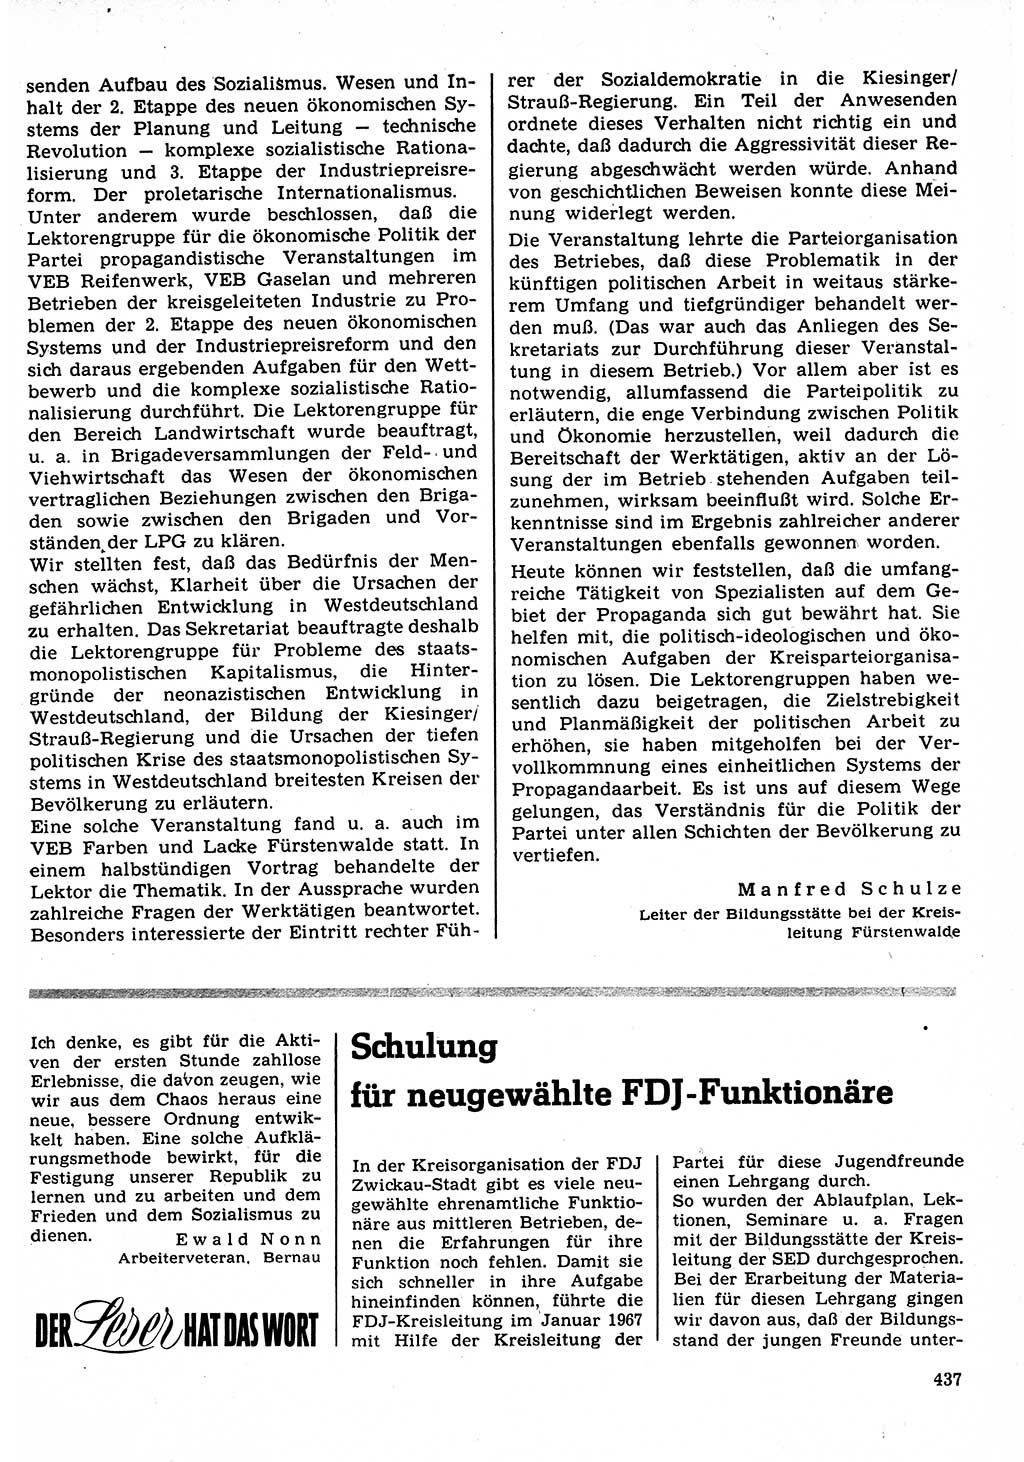 Neuer Weg (NW), Organ des Zentralkomitees (ZK) der SED (Sozialistische Einheitspartei Deutschlands) für Fragen des Parteilebens, 22. Jahrgang [Deutsche Demokratische Republik (DDR)] 1967, Seite 437 (NW ZK SED DDR 1967, S. 437)